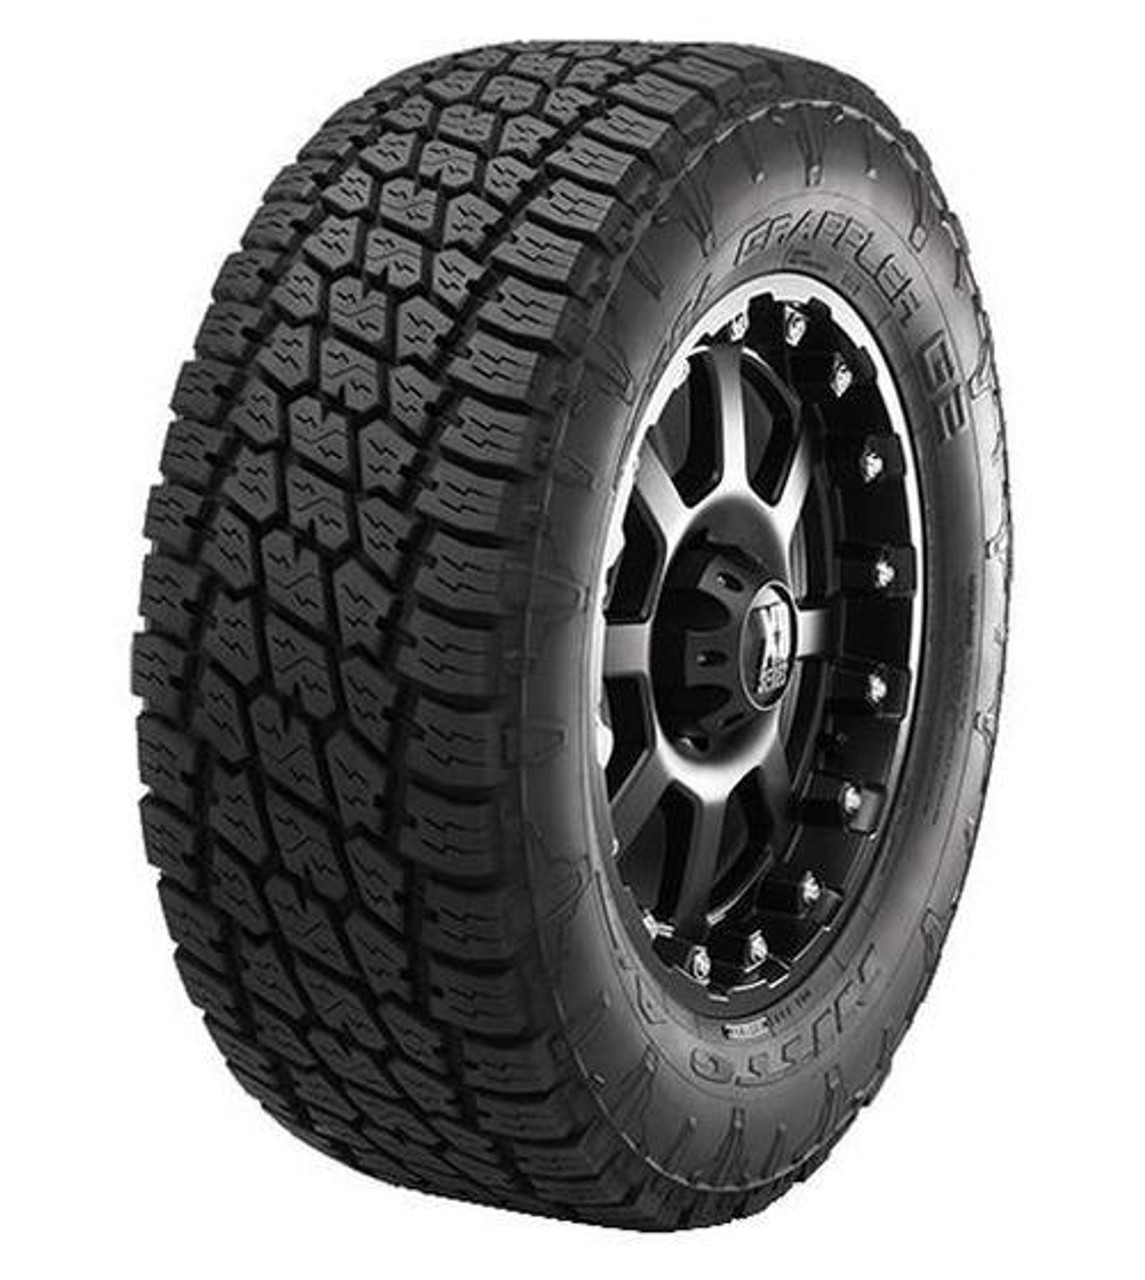 Nitto Terra Grappler G2 265/70R17 Tires | 216130 | 265 70 17 Tire